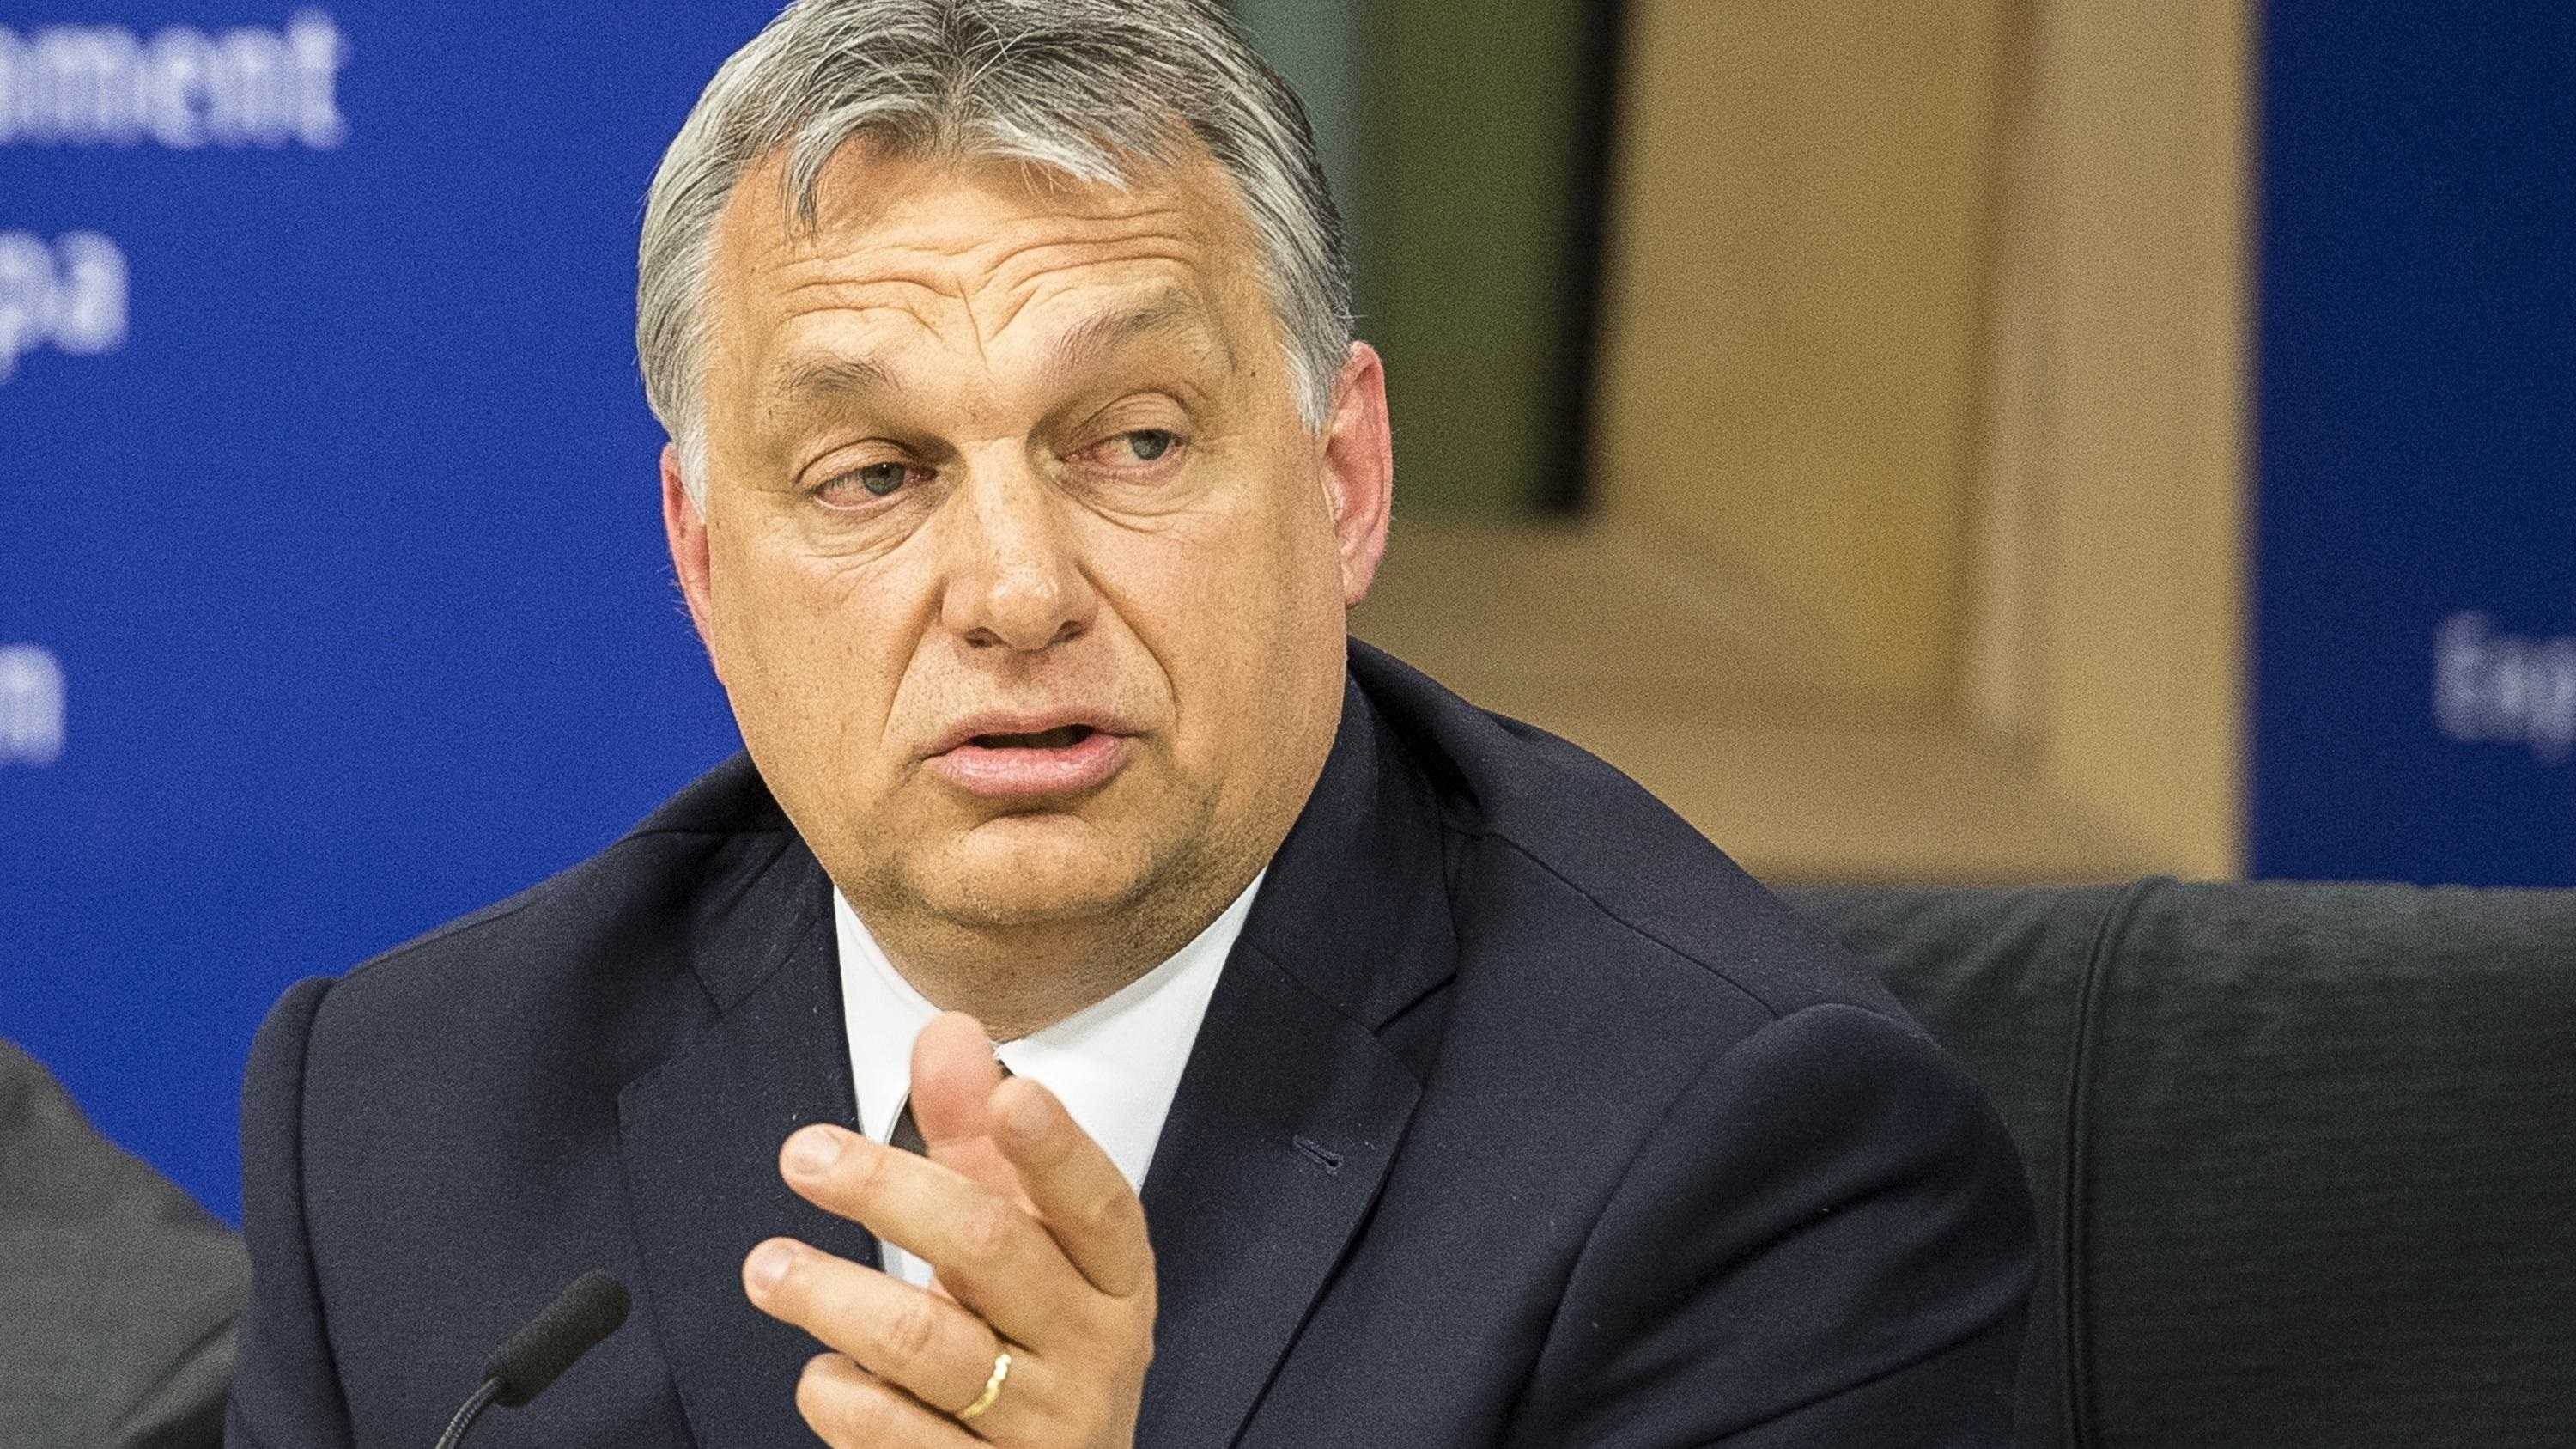 Fidesz opuszcza Europejską Partię Ludową w europarlamencie